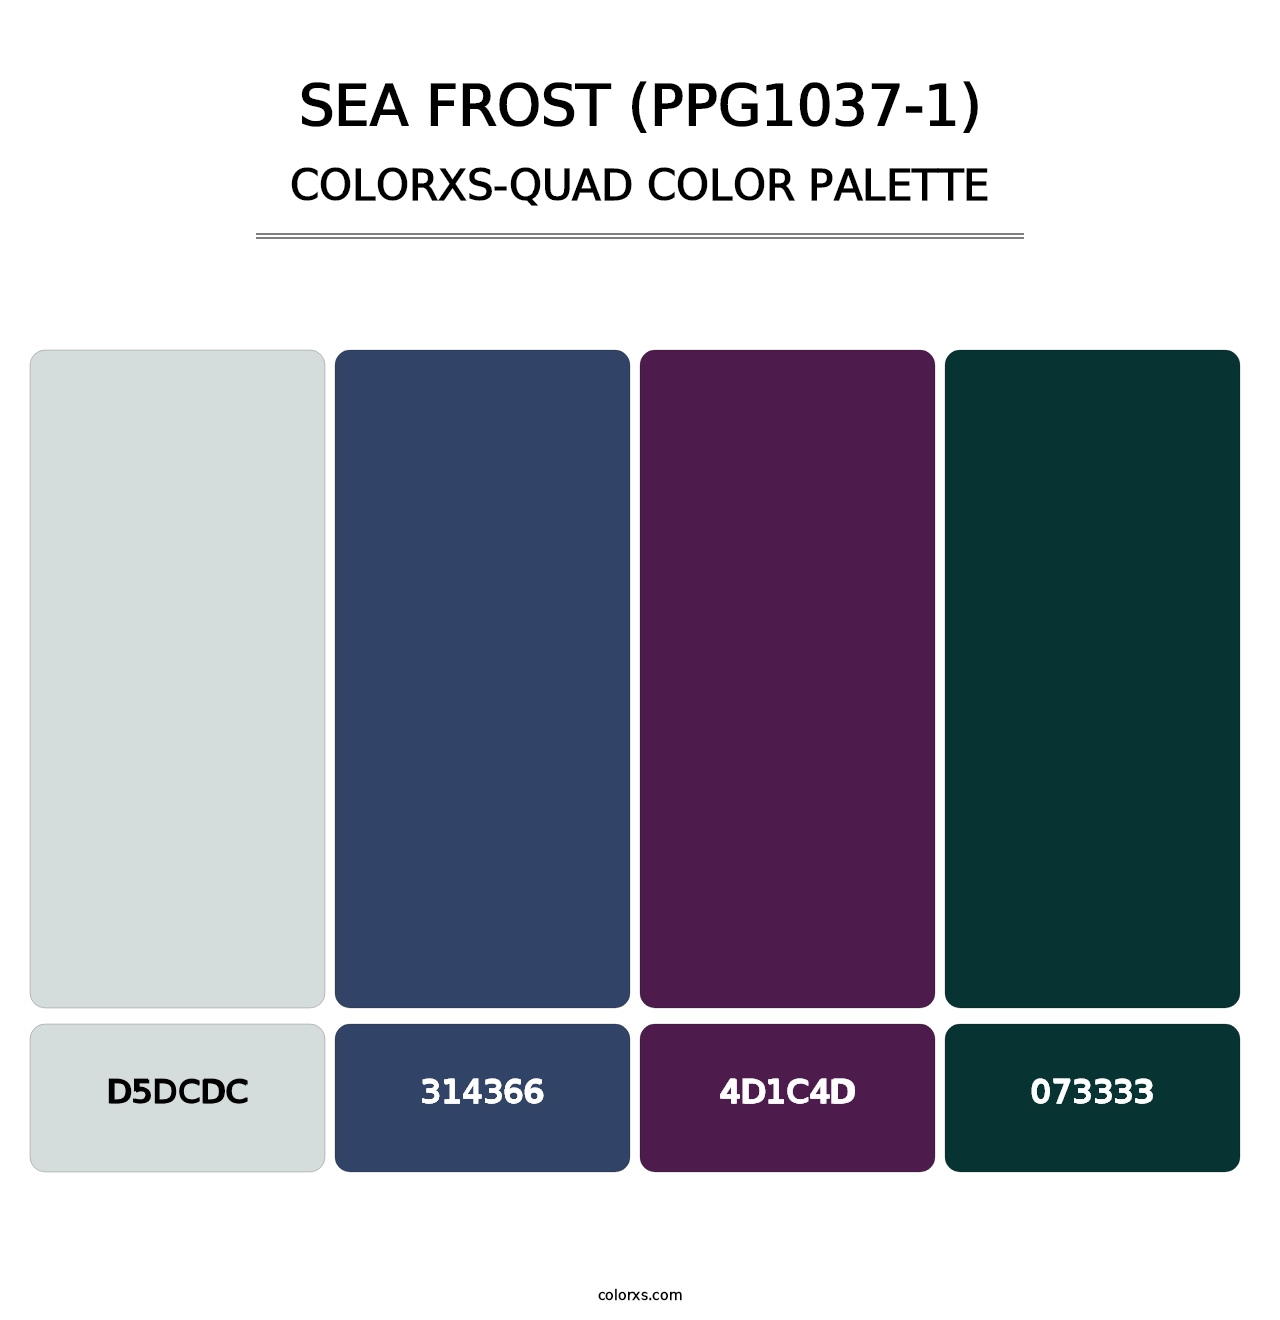 Sea Frost (PPG1037-1) - Colorxs Quad Palette